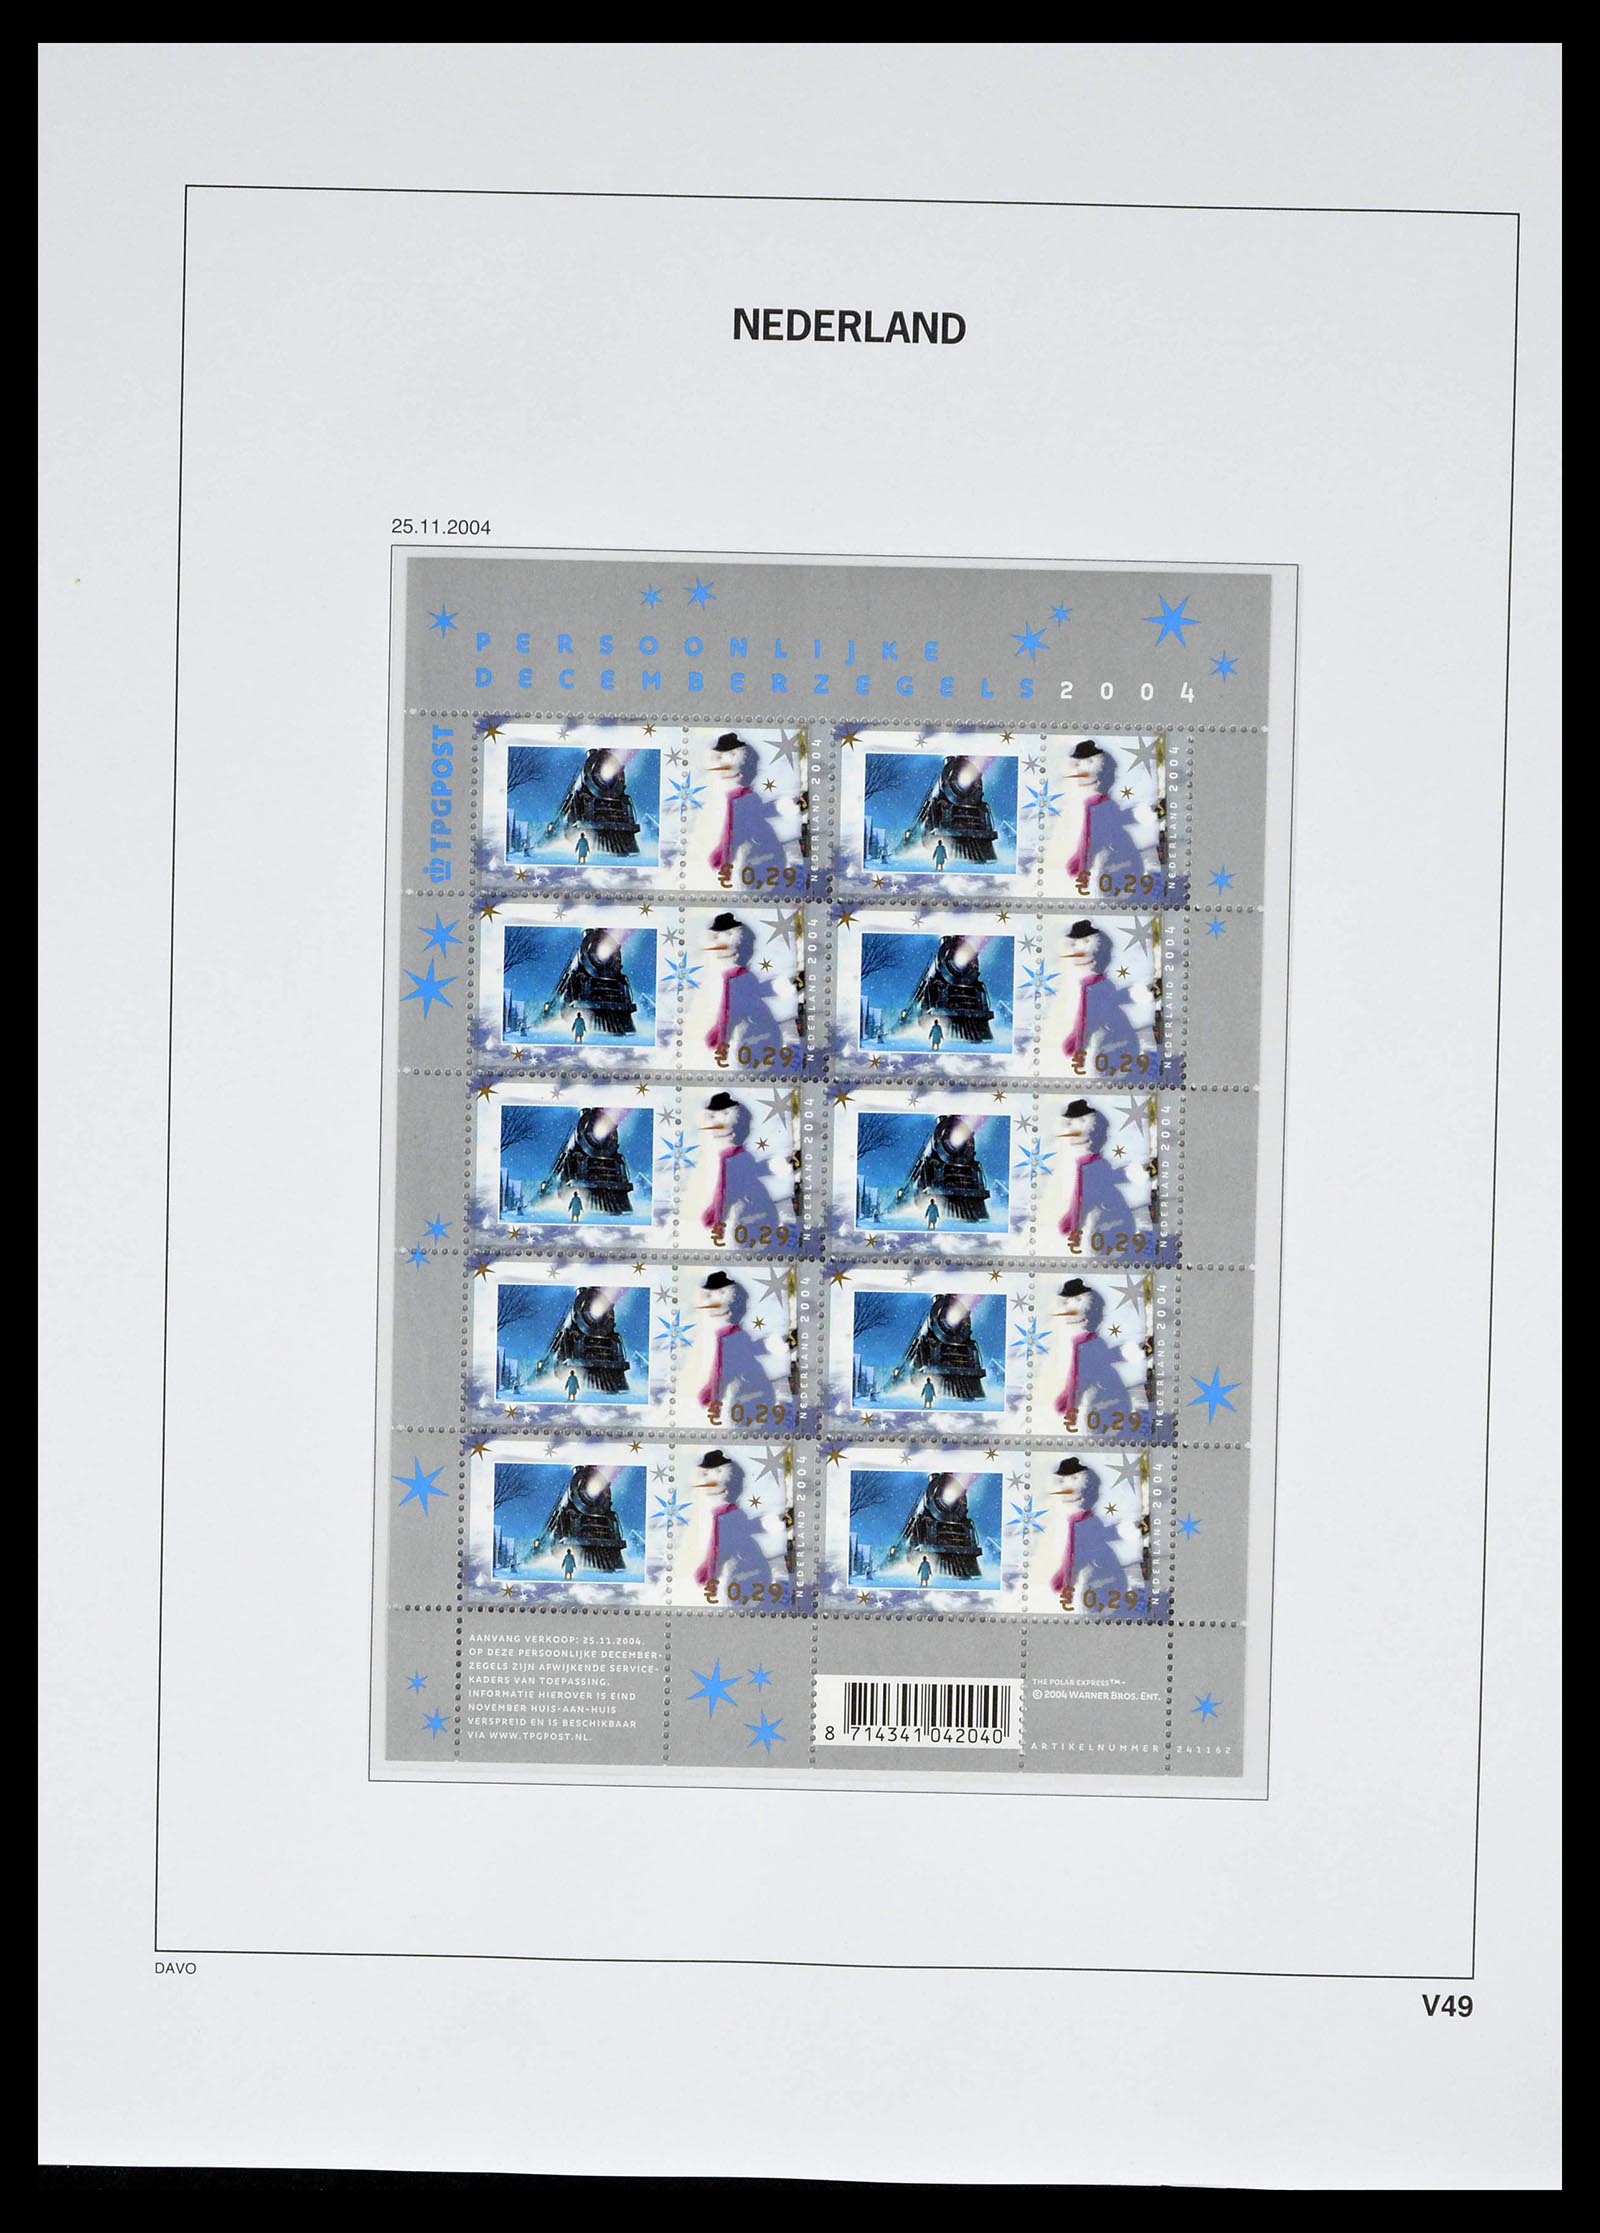 39134 0063 - Stamp collection 39134 Netherlands sheetlets 1992-2019!